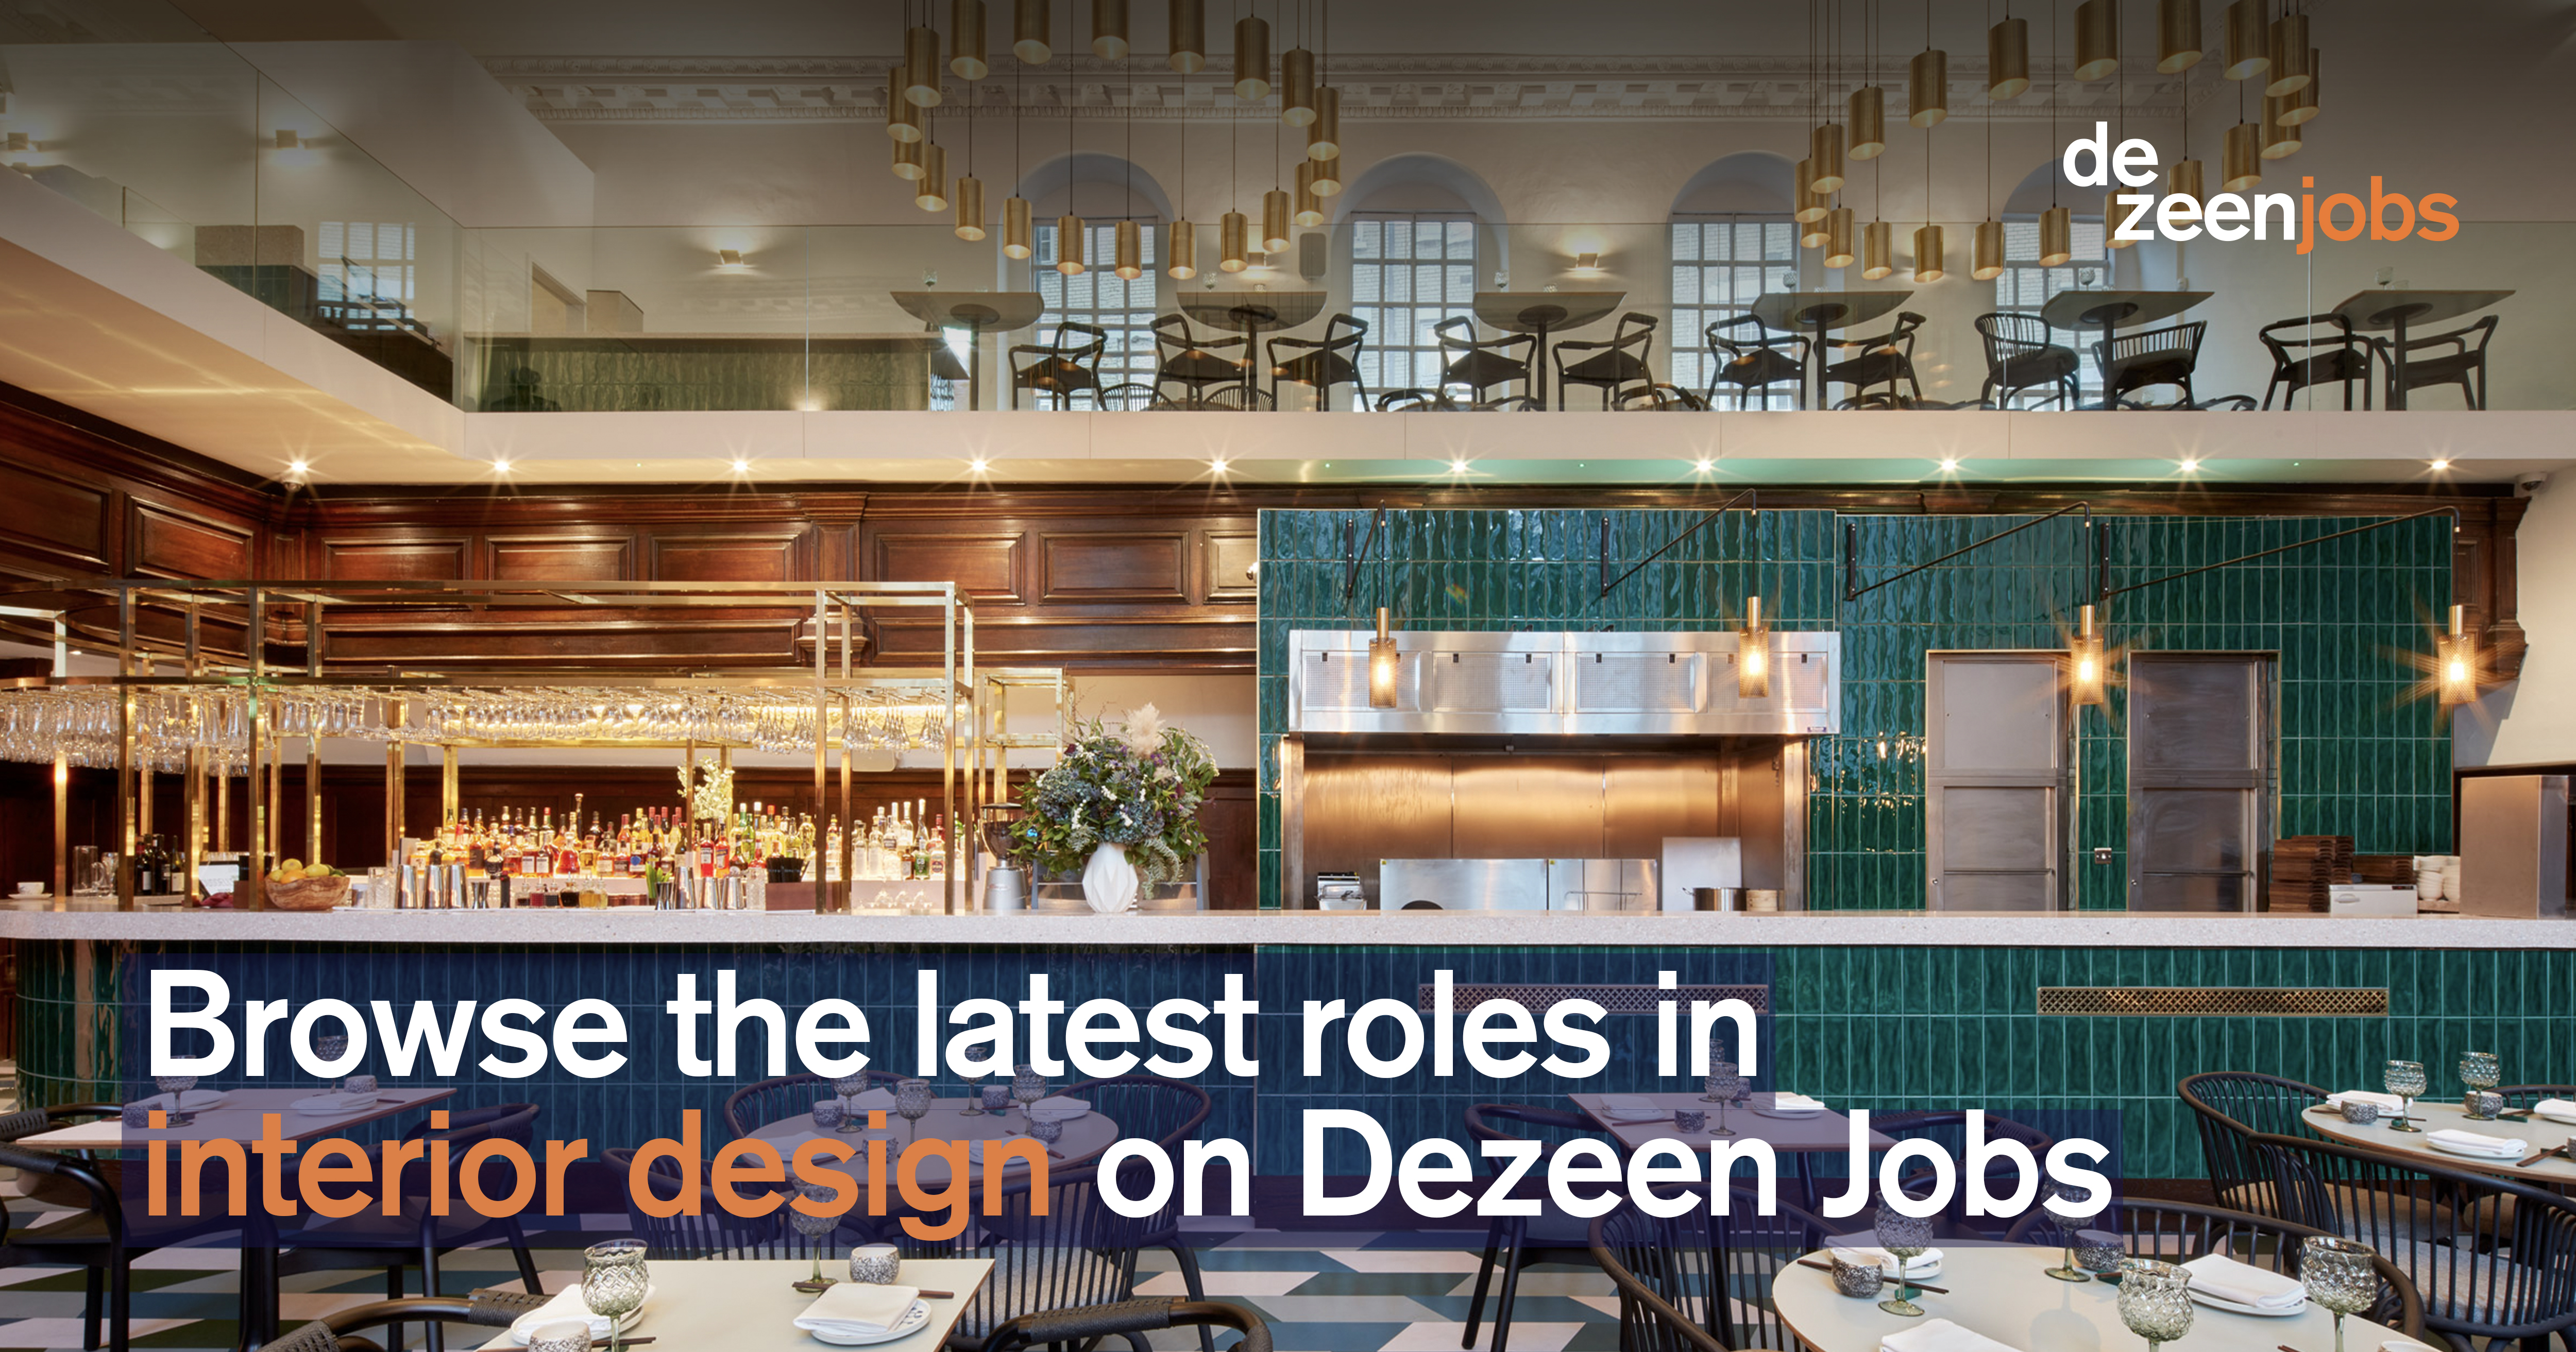 Interior Design Roles Dezeen Jobs